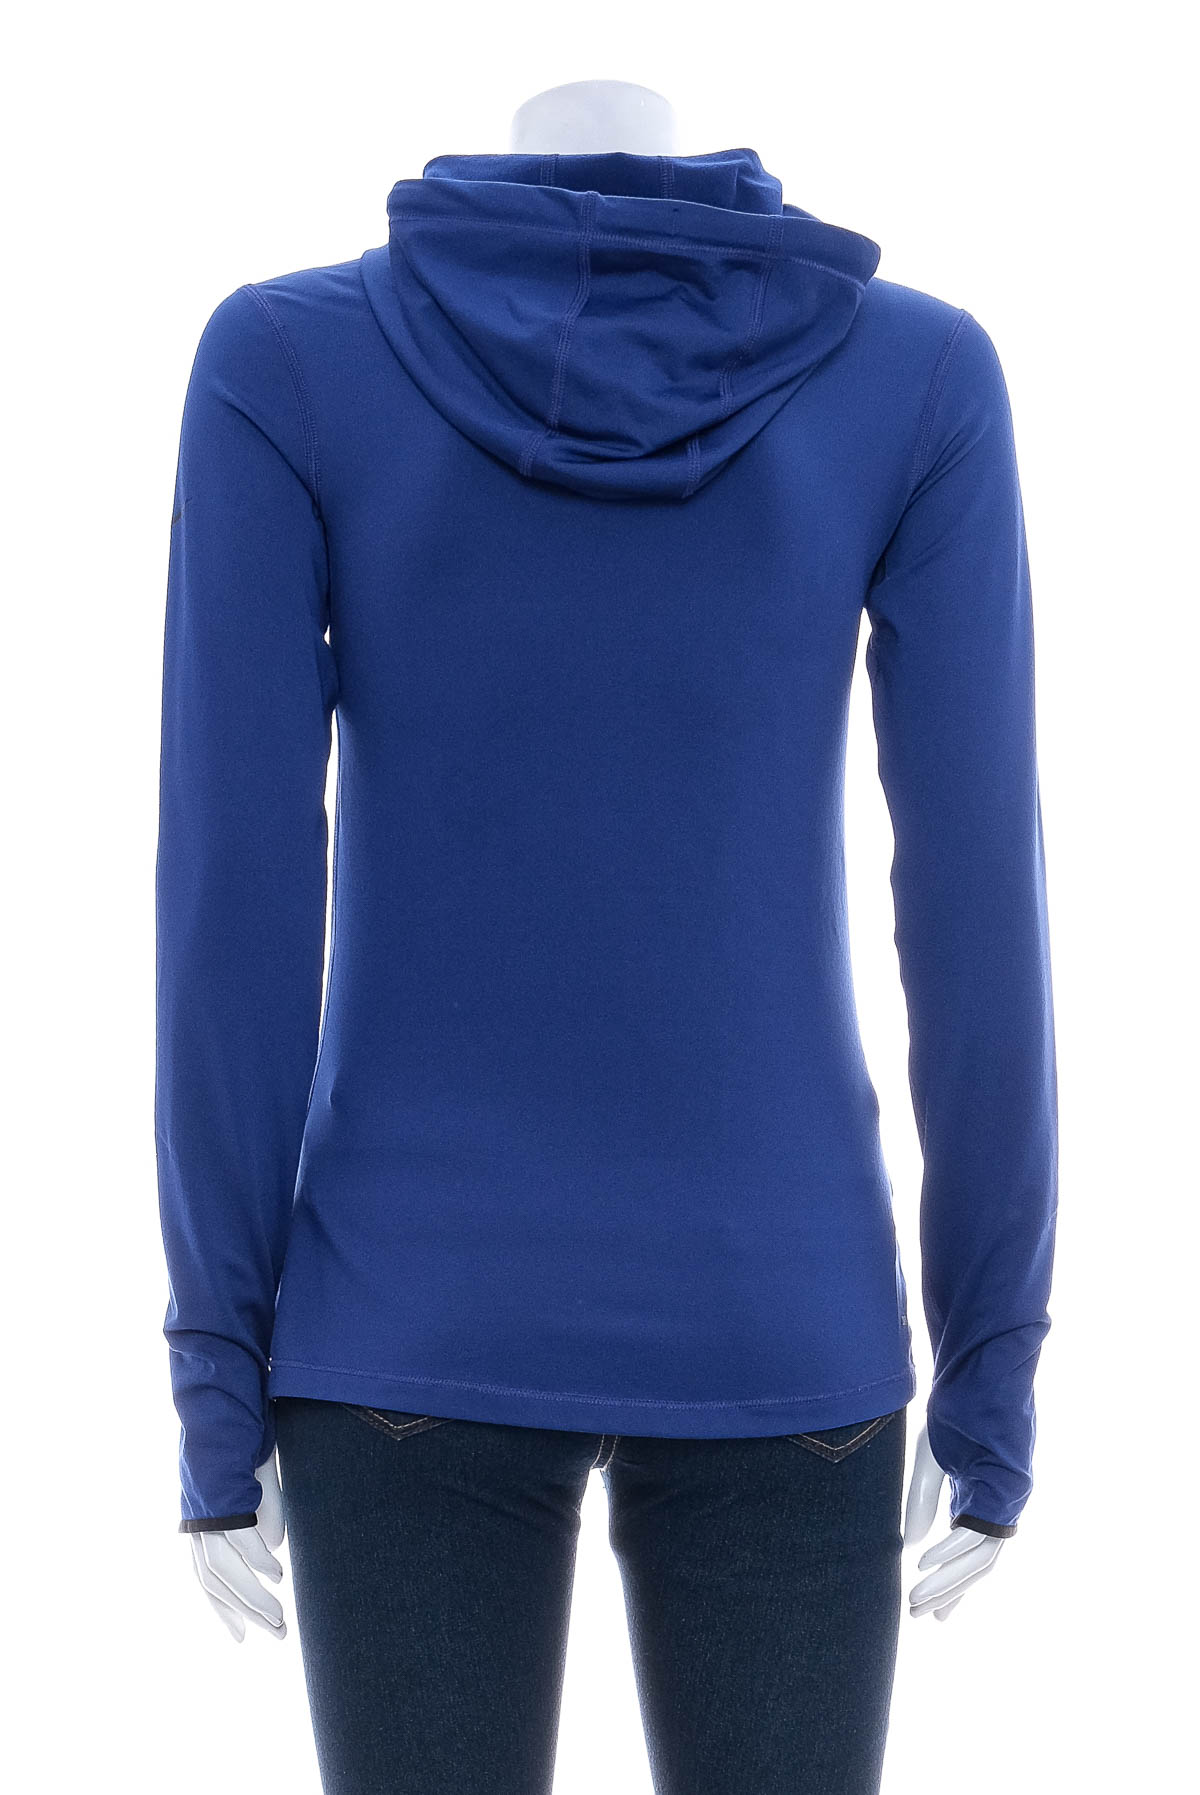 Women's sweatshirt - NIKE PRO - 1